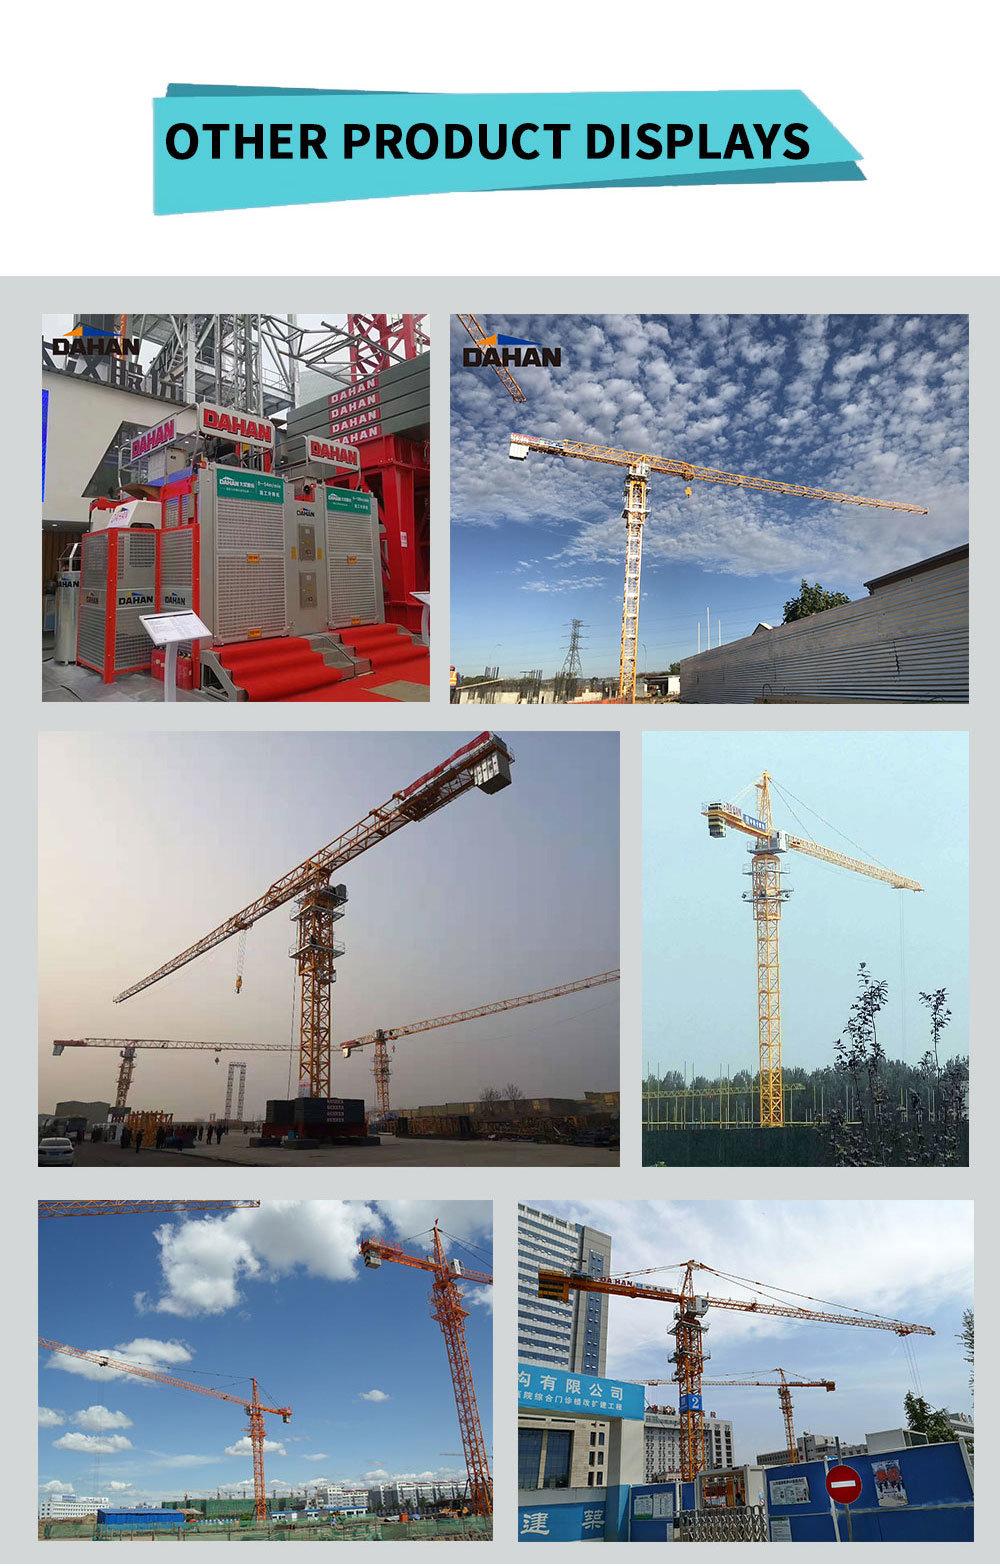 Construction Building Foldable Mini Mobile Tower Crane